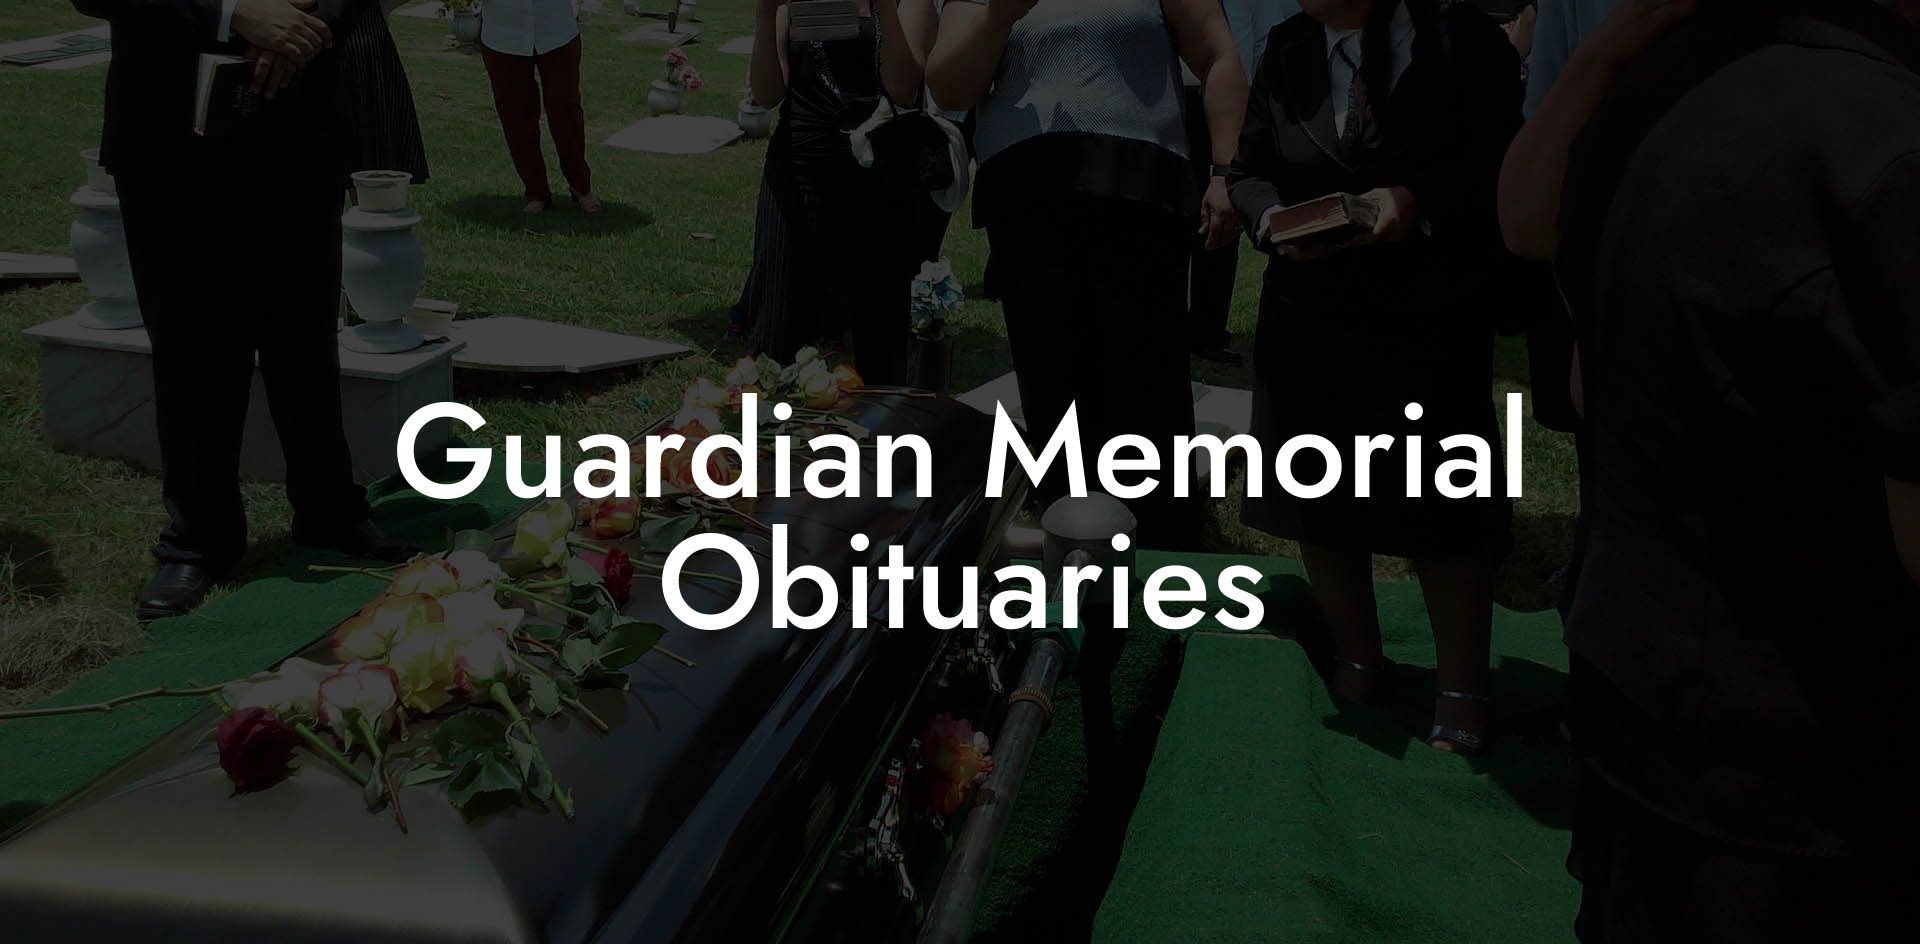 Guardian Memorial Obituaries